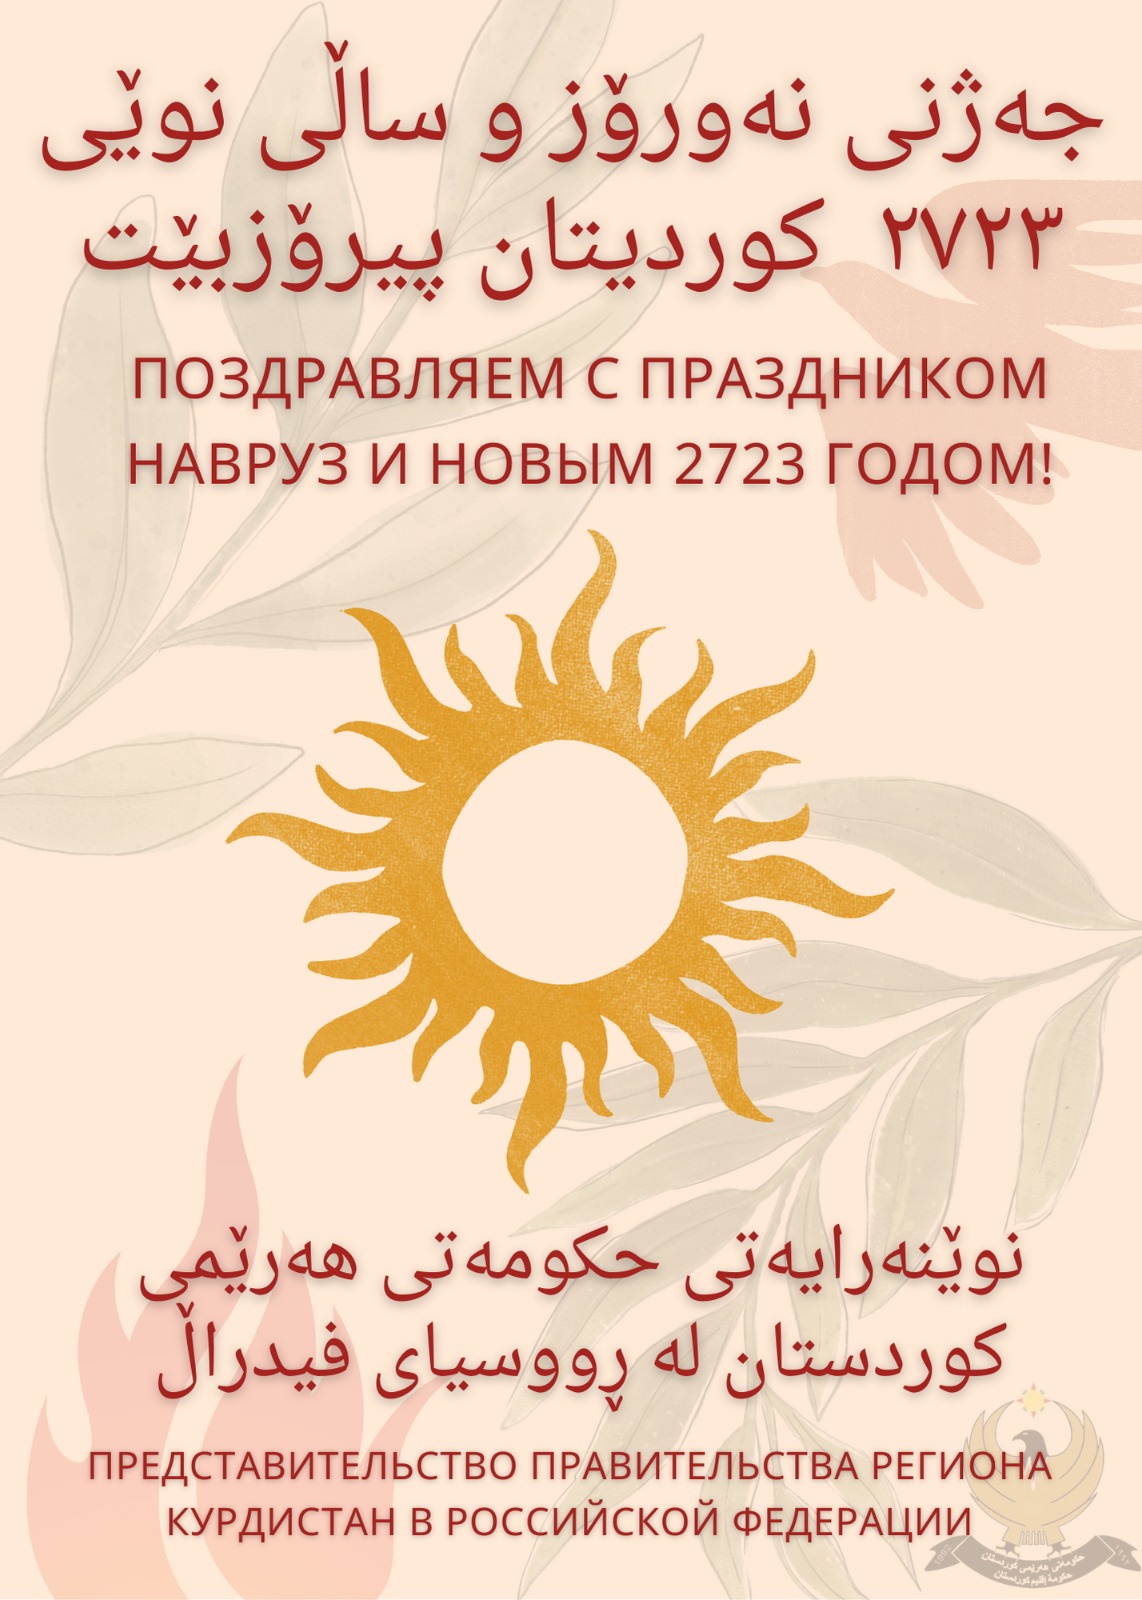 Поздравляем с Наврузом и наступлением курдского нового 2723 года!